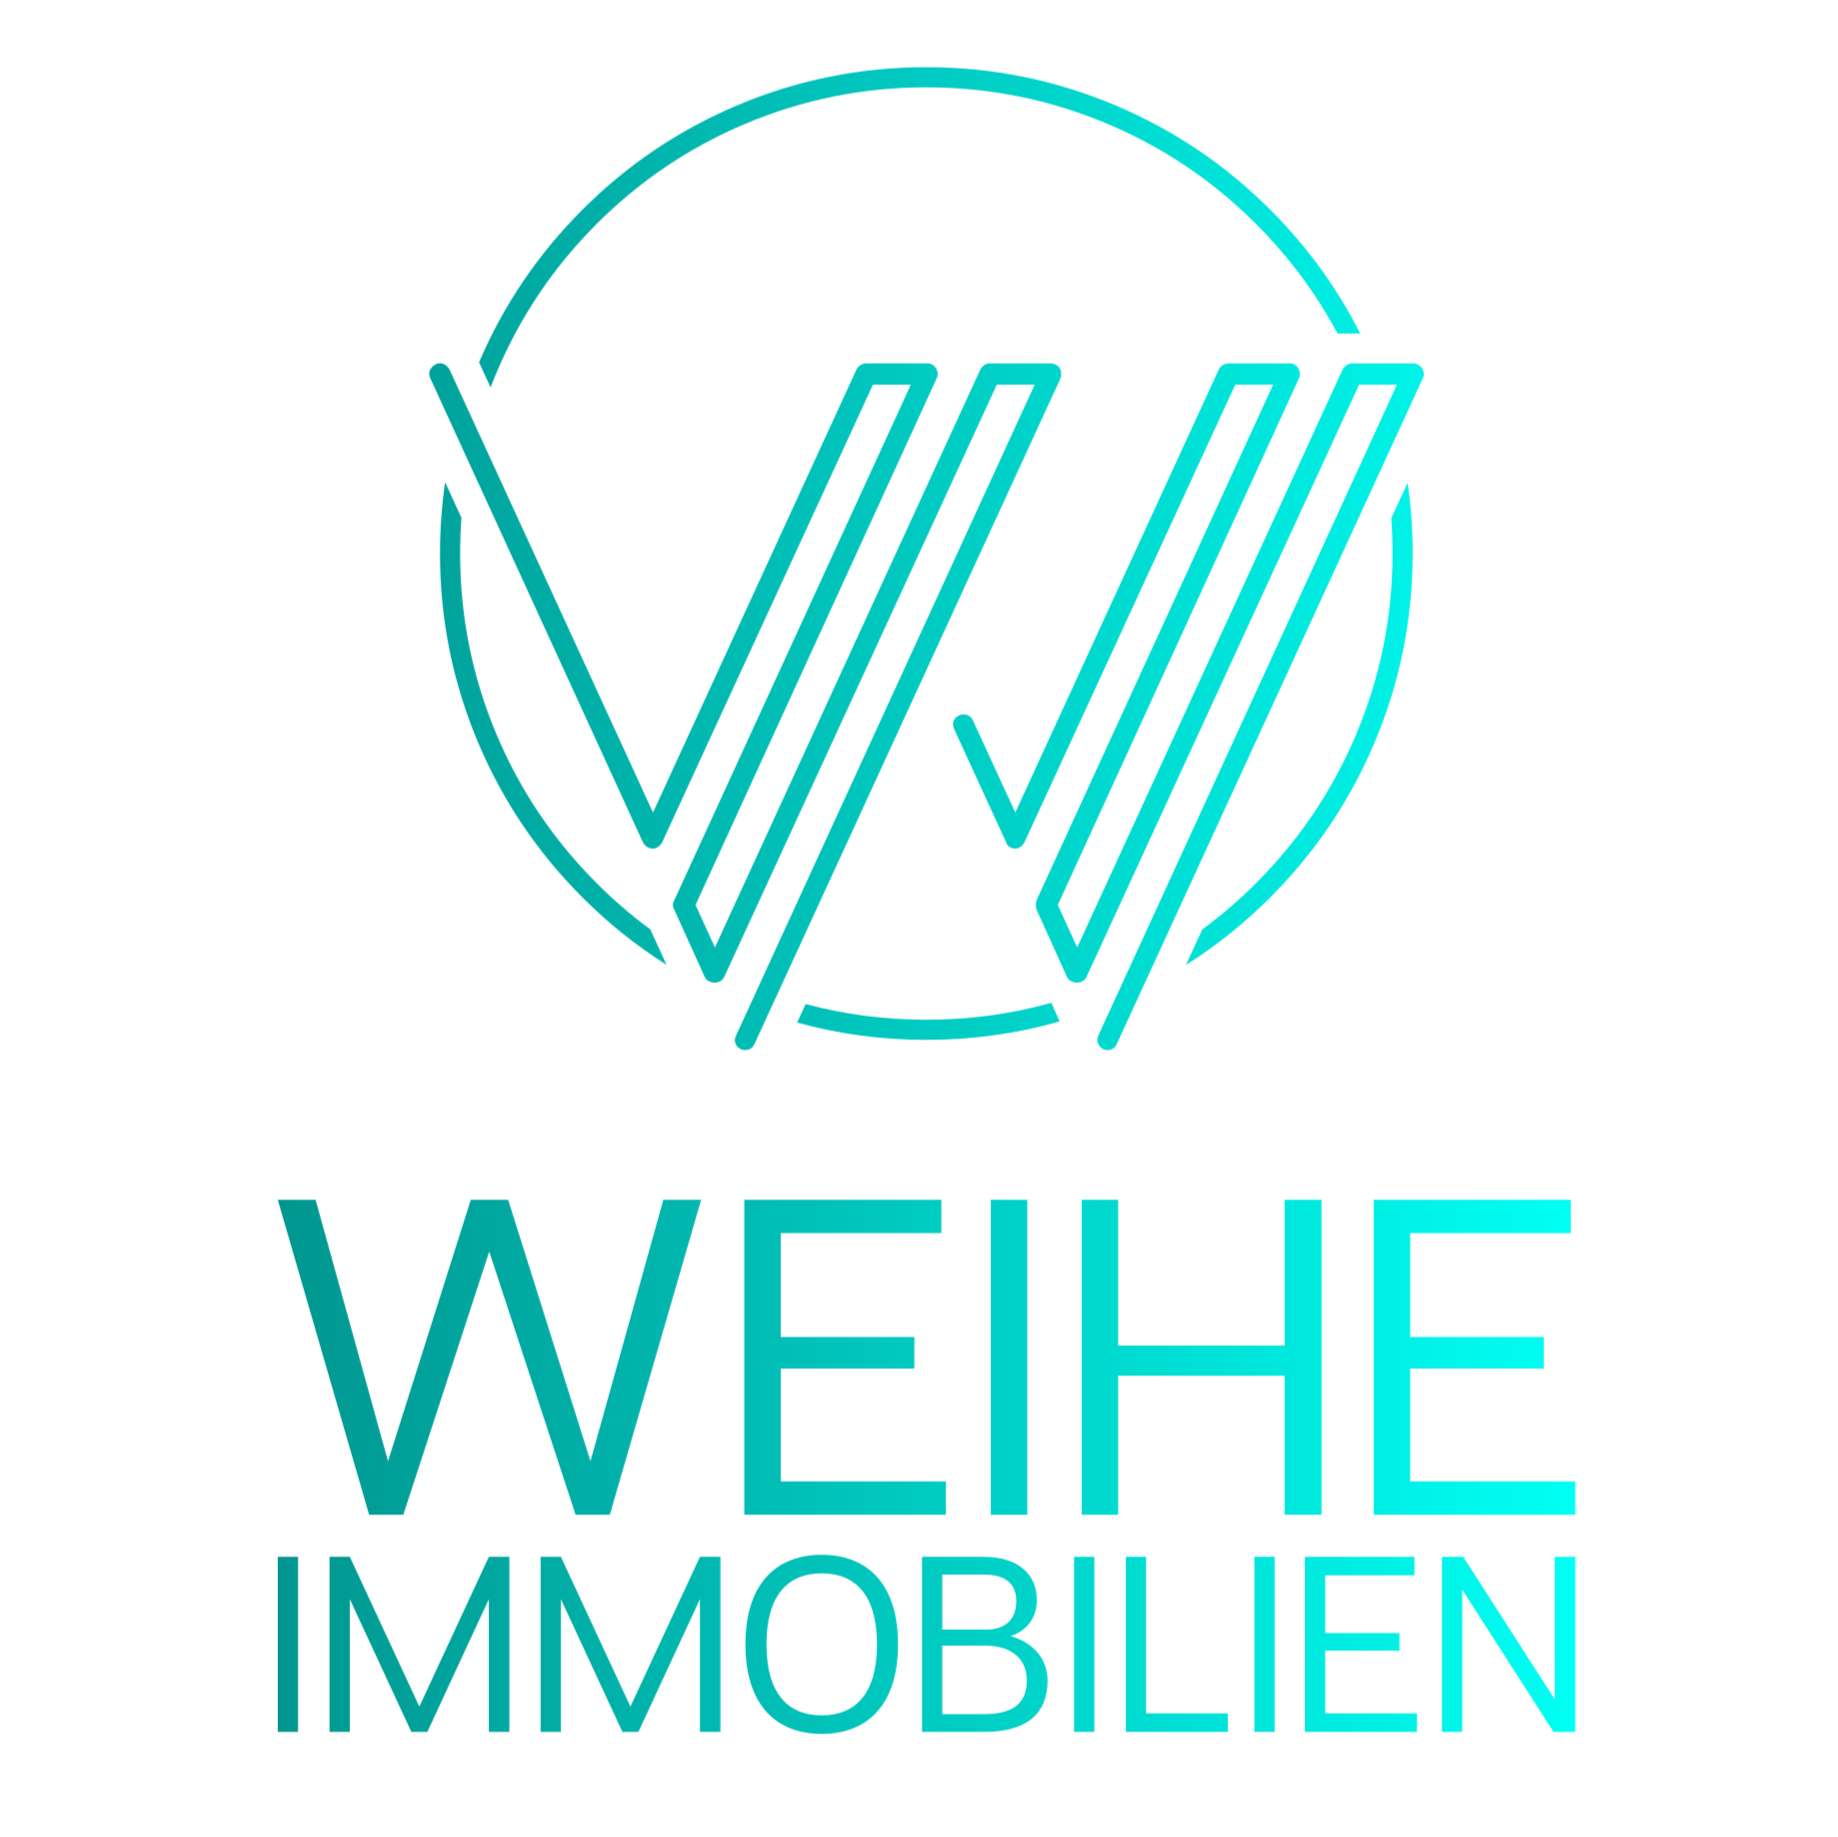 Bild 4 Weihe Immobilien Service Agentur in Glienicke/nordbahn